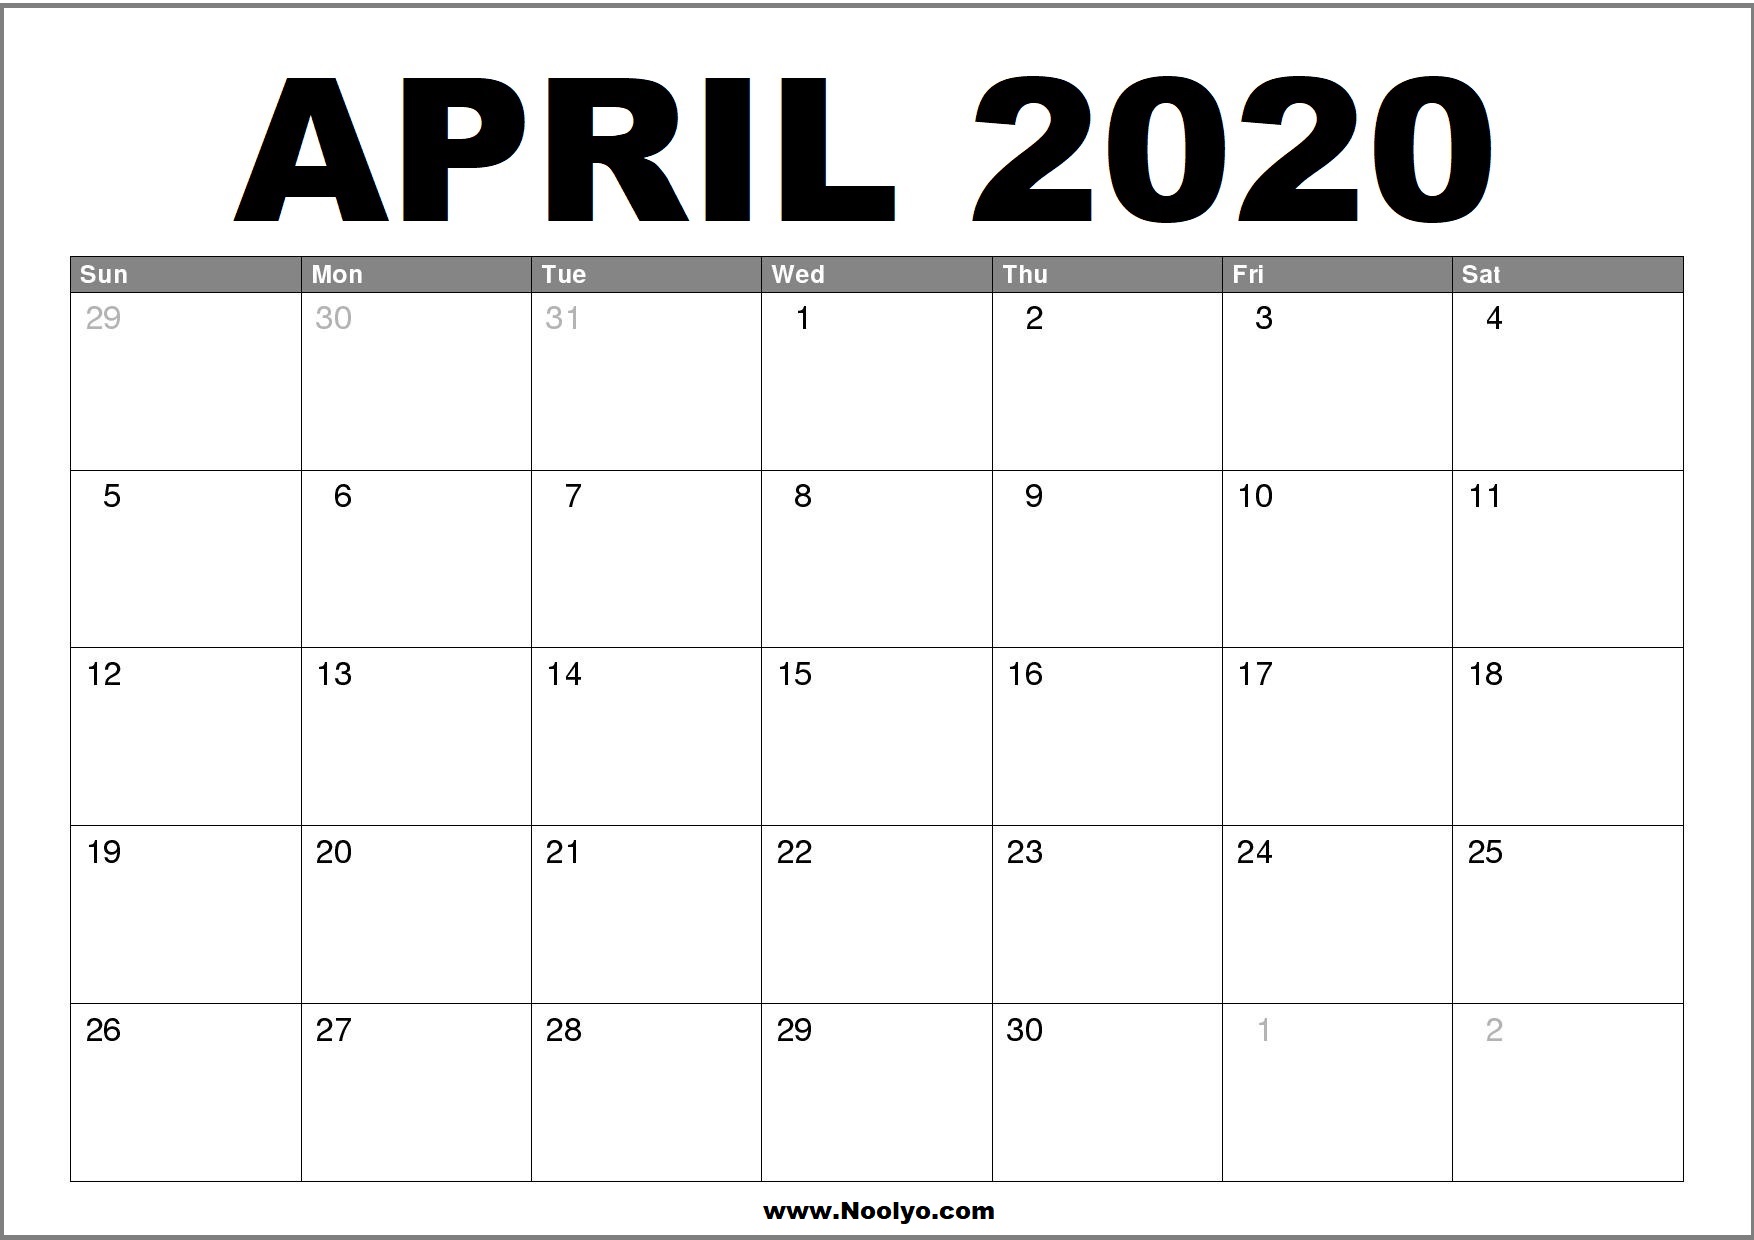 April 2020 Calendar Printable - Free Download